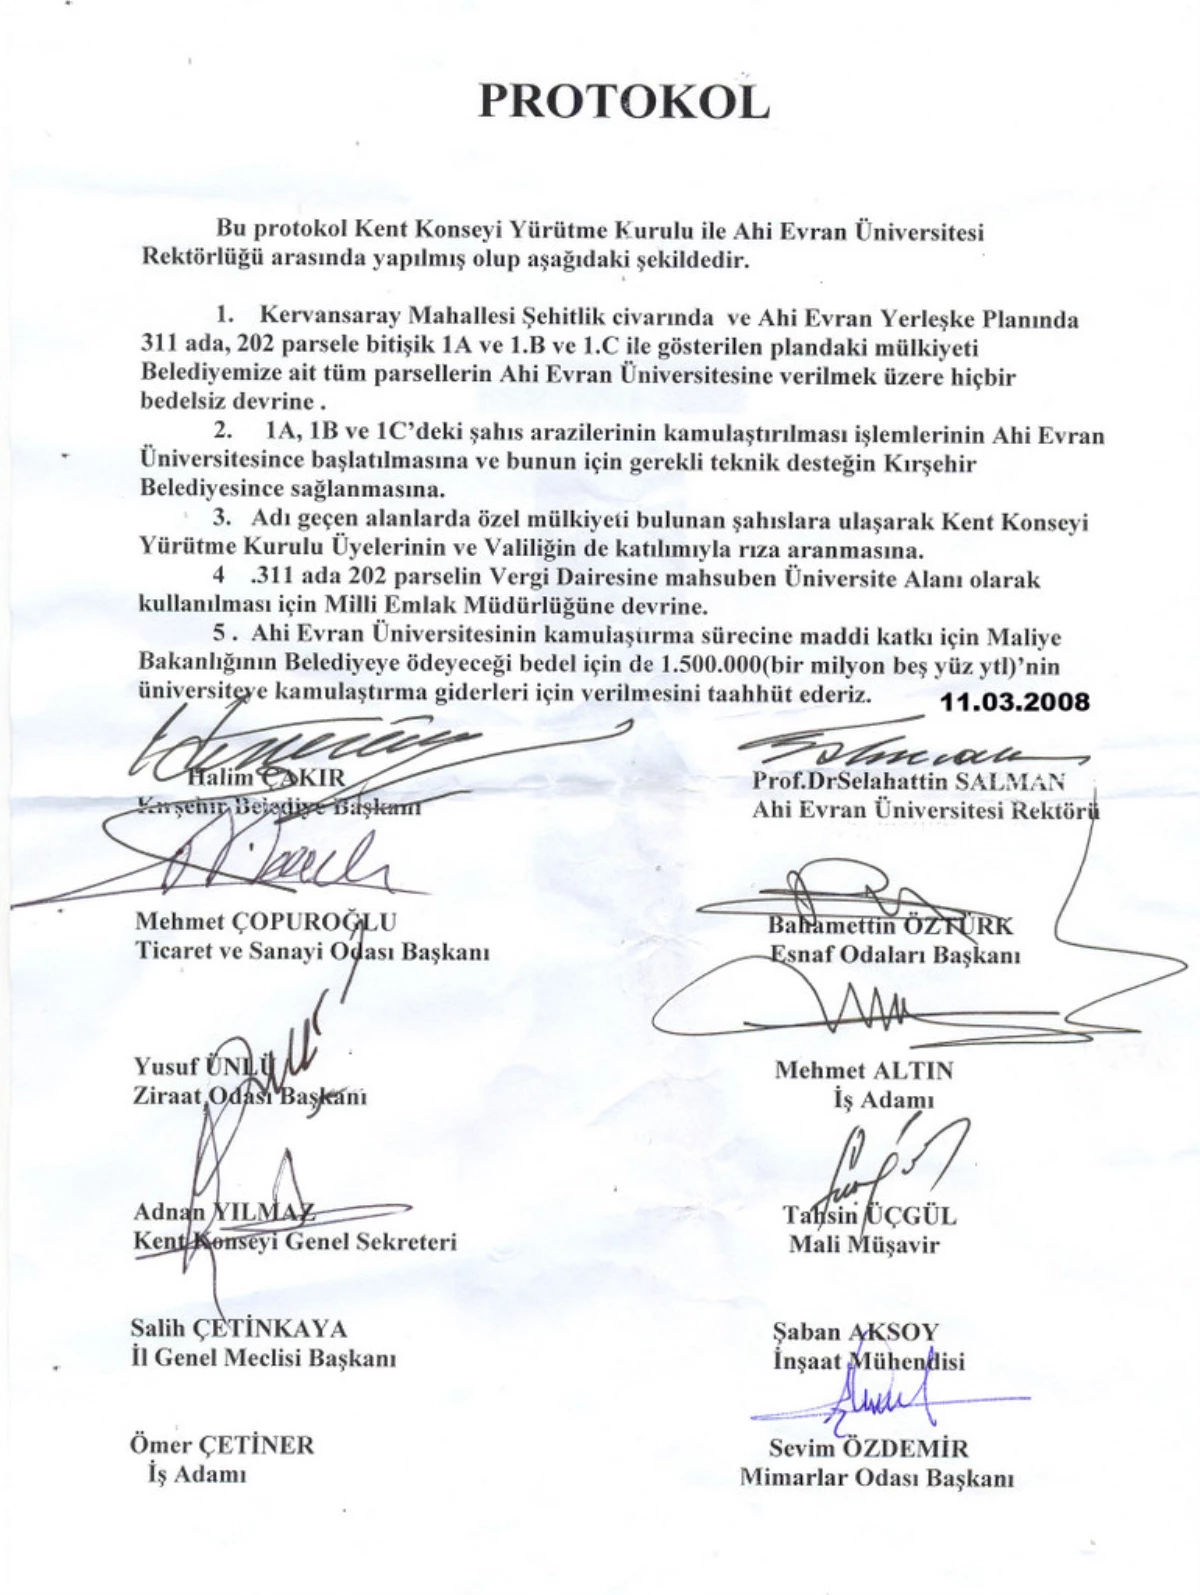 Belediye-üniversite İşbirliğinde İkinci Protokol İmzalandı